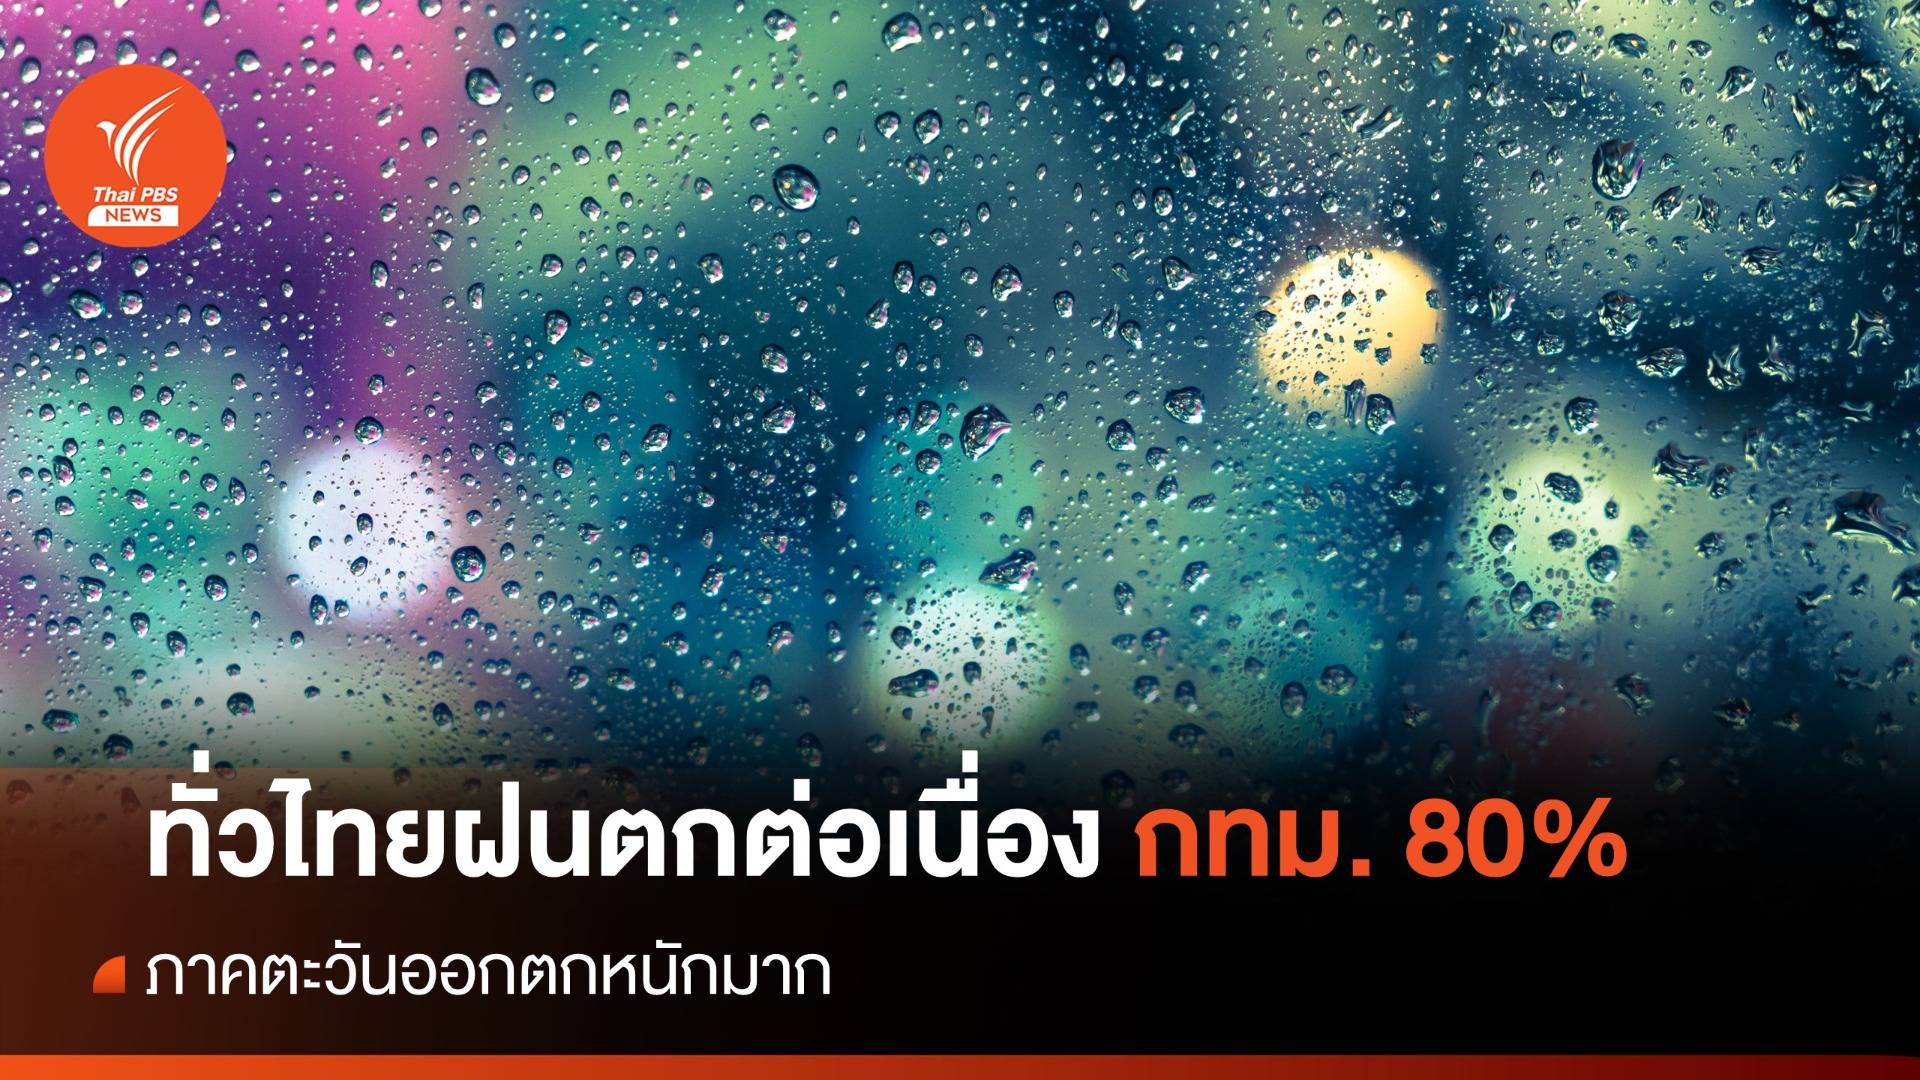 สภาพอากาศวันนี้ ทั่วไทยฝนตกต่อเนื่อง ภาคตะวันออกตกหนักมาก - กทม. 80%